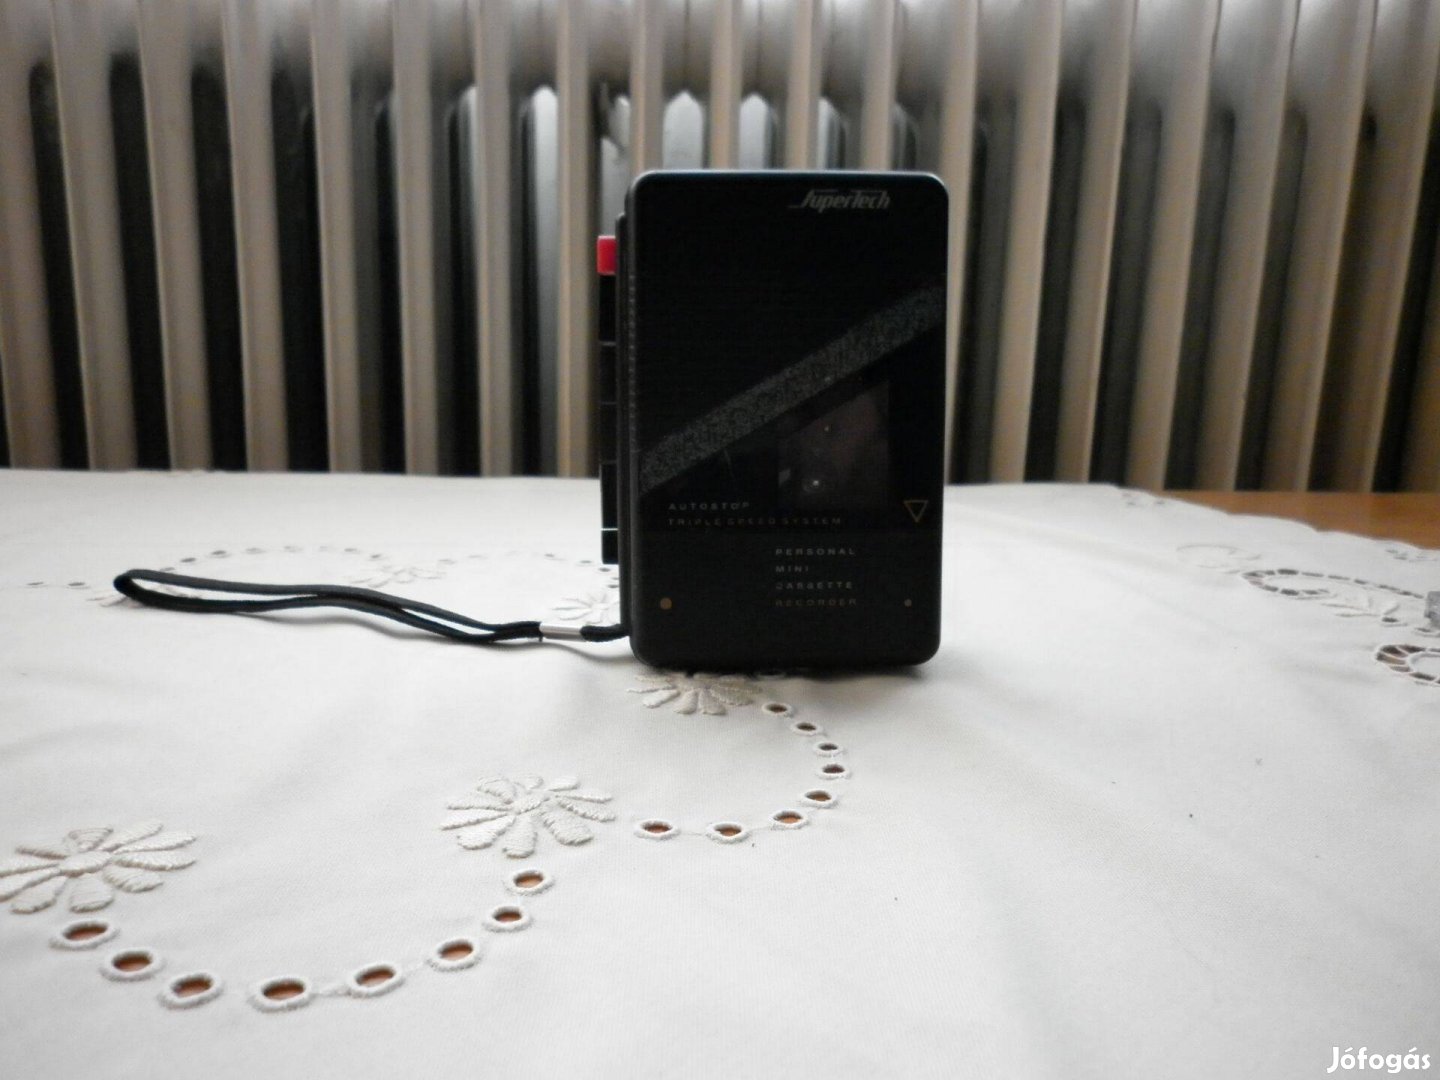 Supertech Úniverzális Walkman Beépitett Mikrofon és Hangszoró